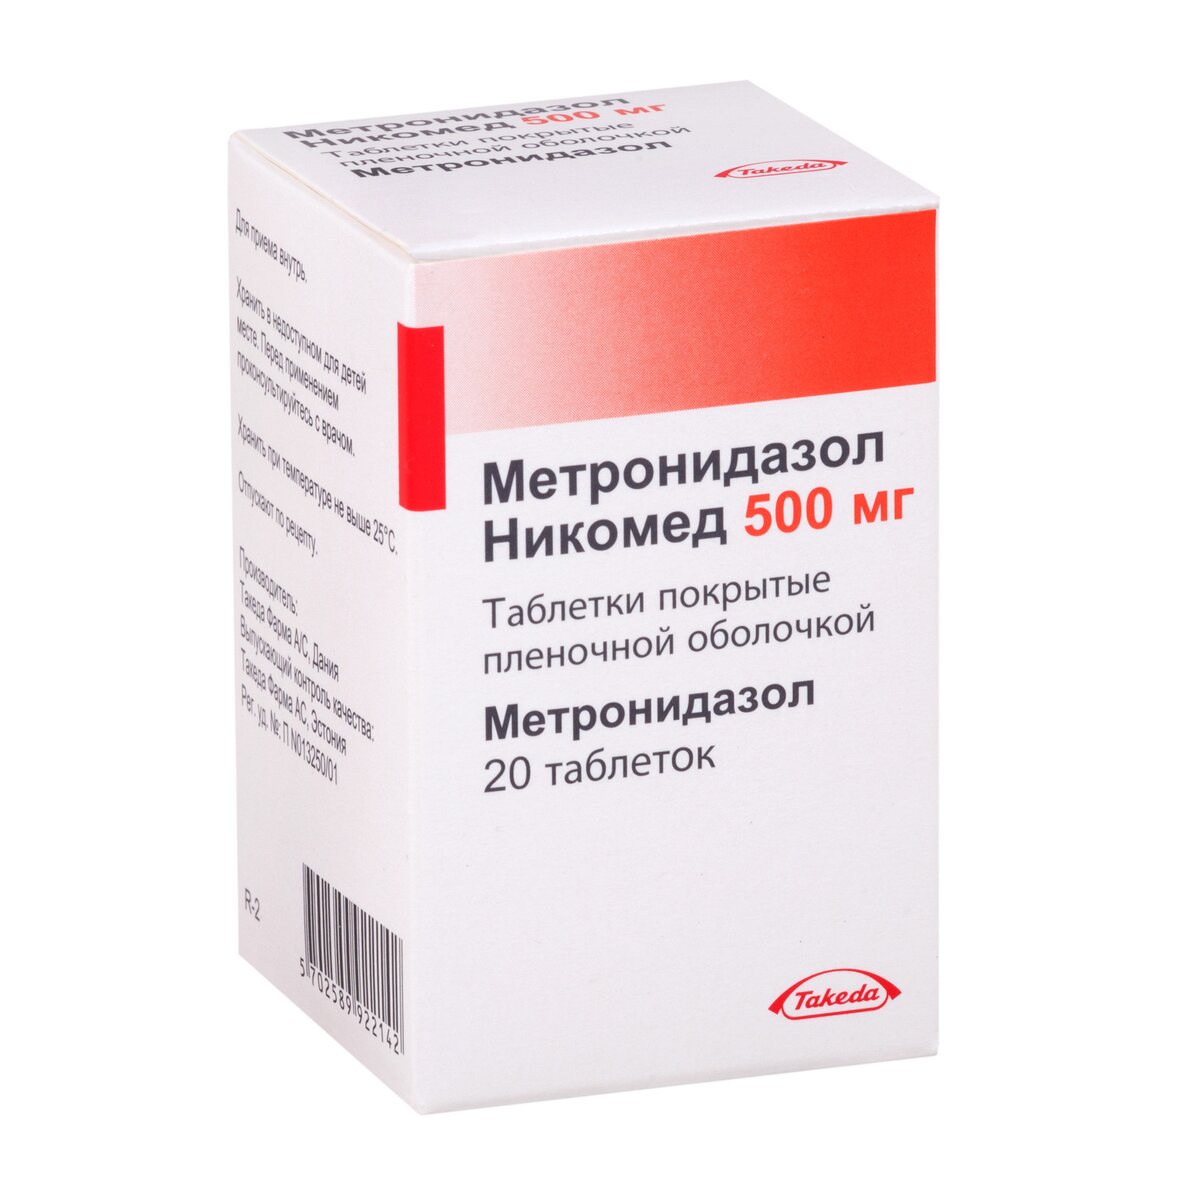 Метронидазол Никомед таблетки 500 мг 20 шт.